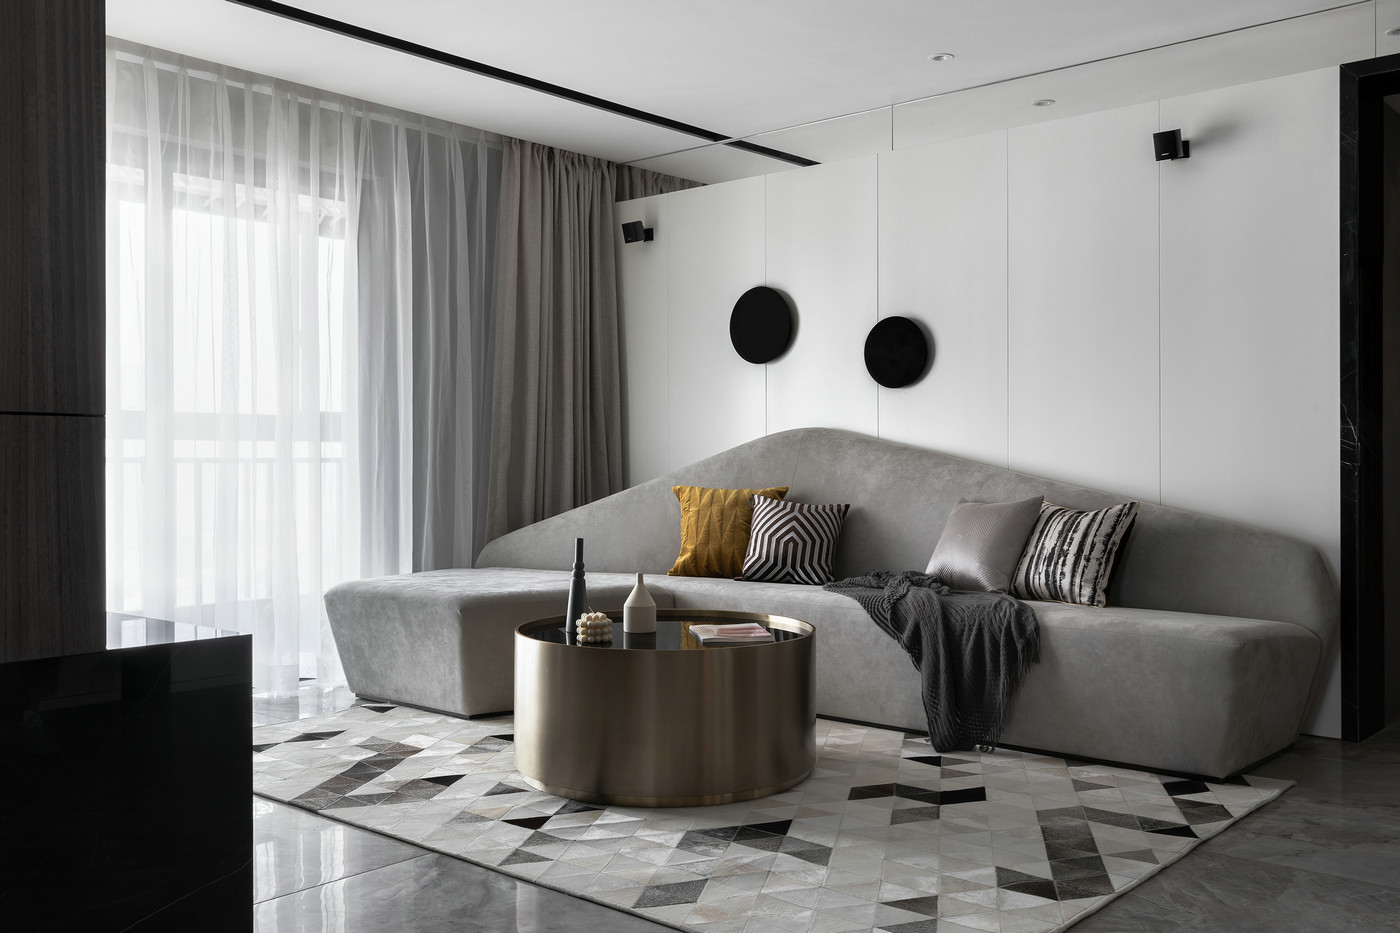 沙发背景墙设计极具创意，沙发线条流畅，营造出稳定、协调的空间感受。